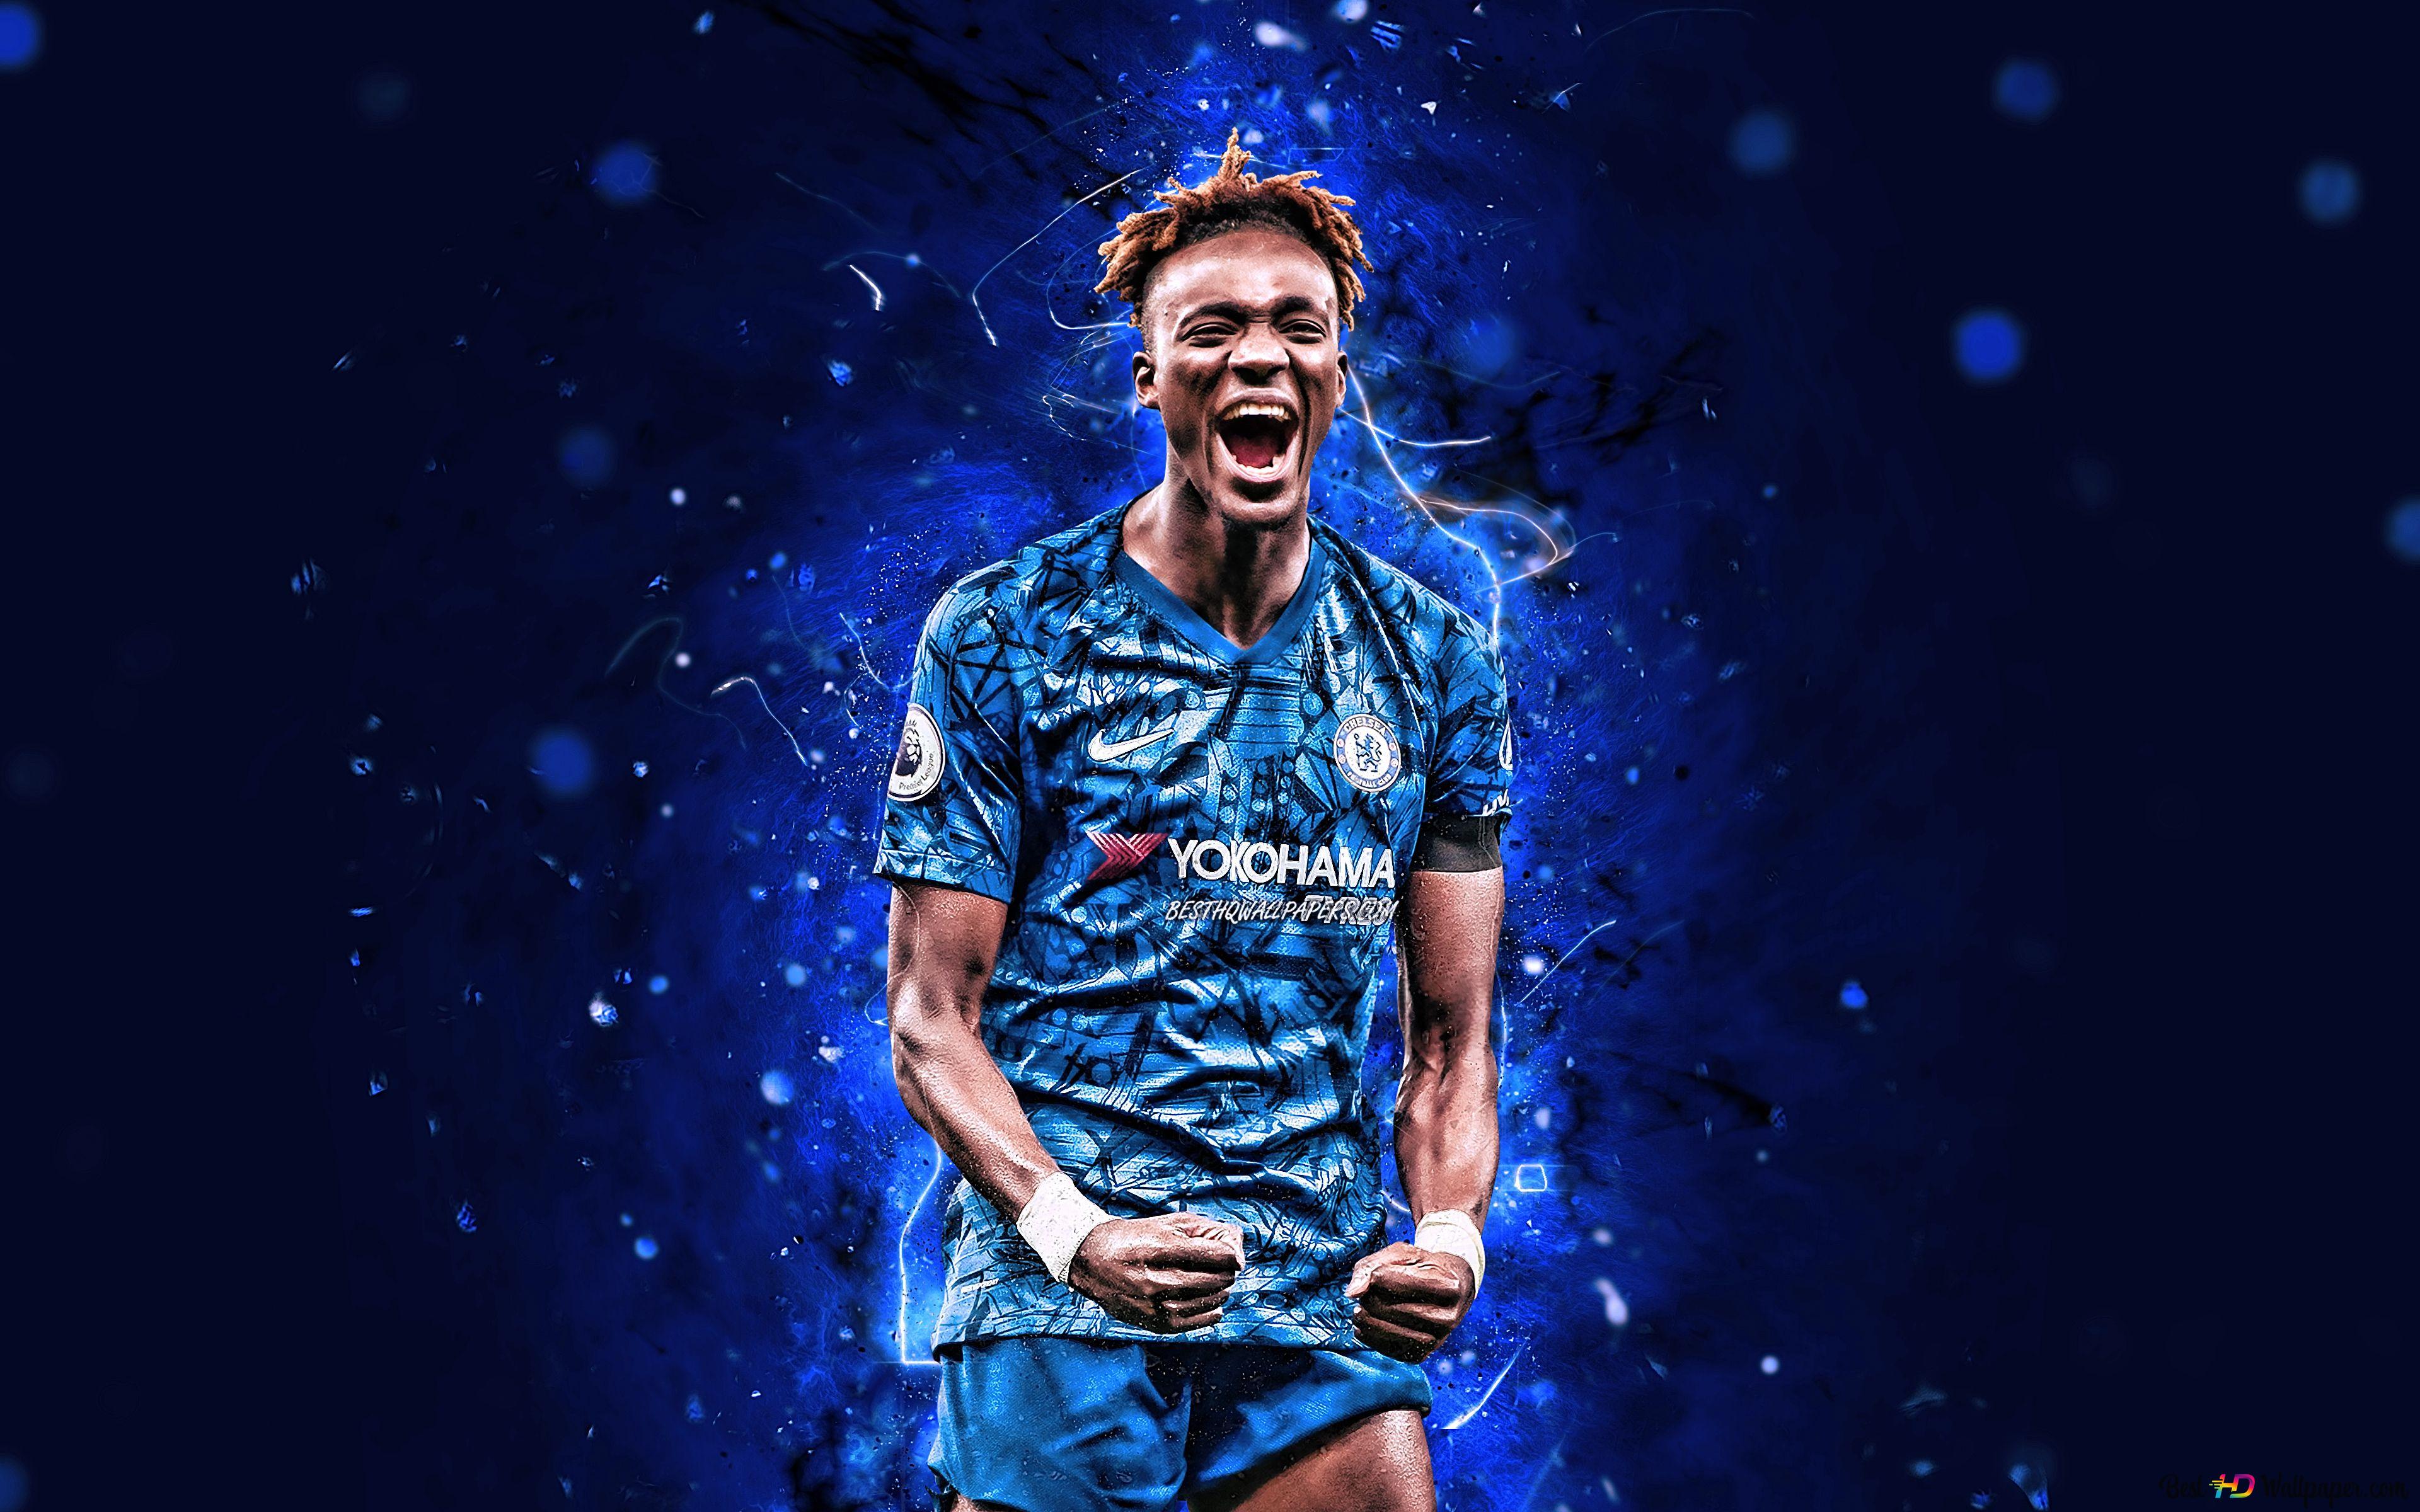 England national team striker tammy abraham poster image in blue tones k wallpaper download